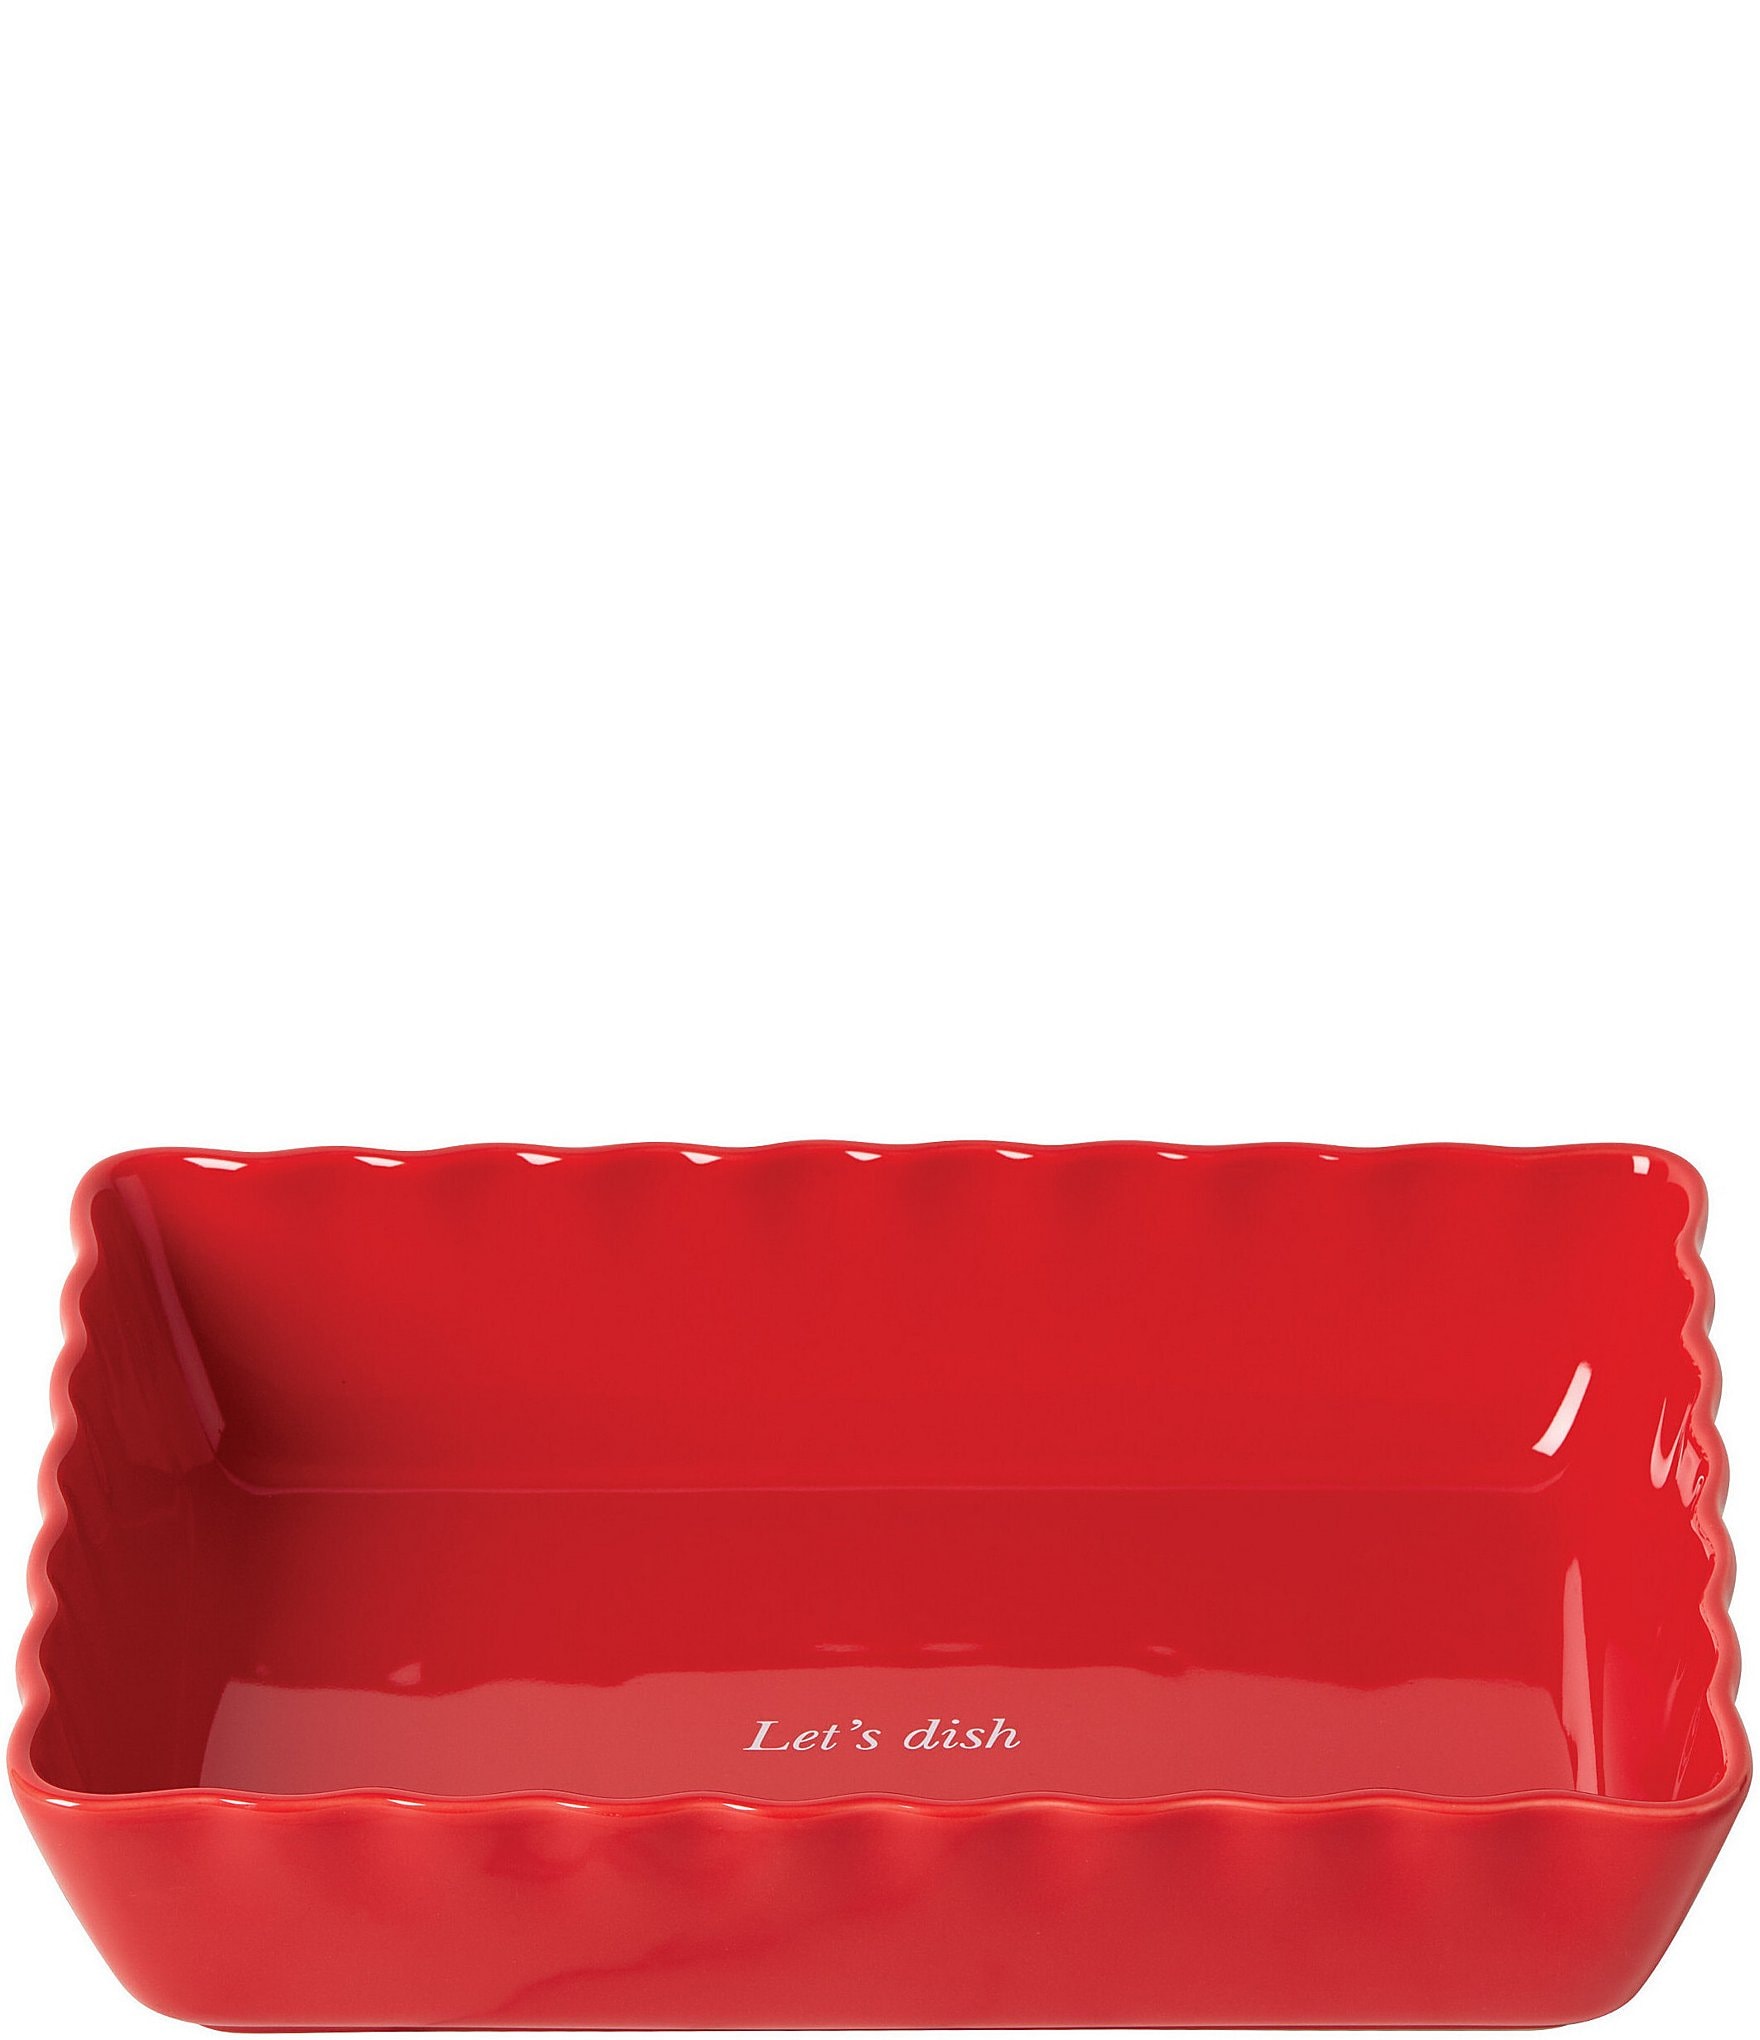 kate spade new york Make It Pop Rectangular Red Baking Dish | Dillard's